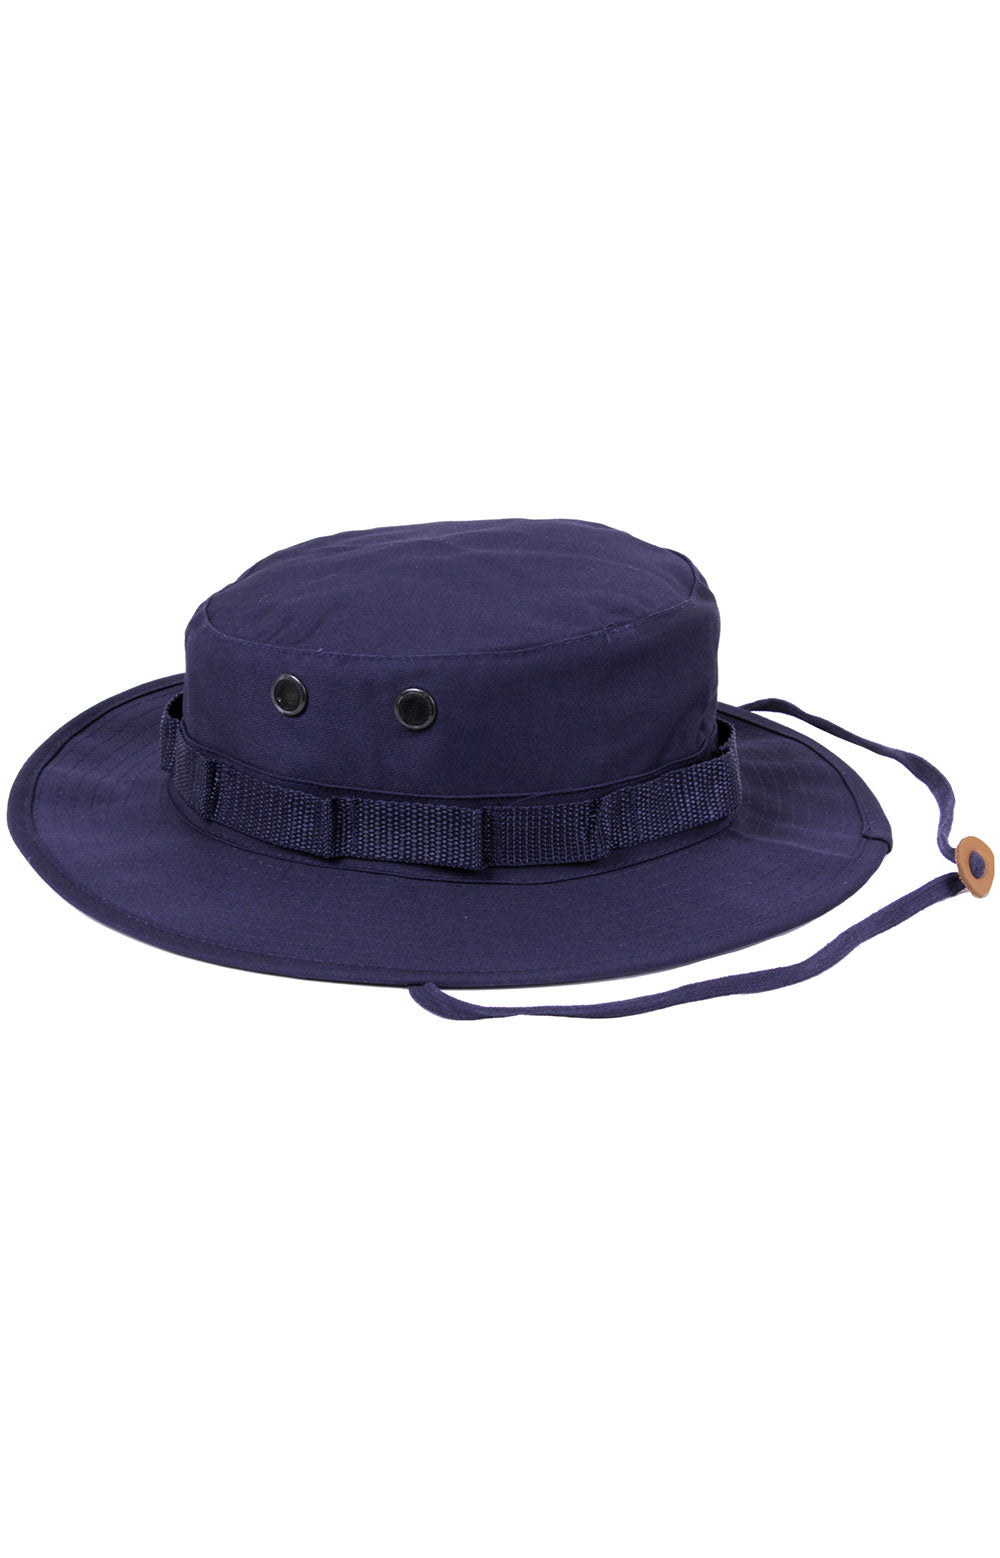 (5826) Boonie Hat - Navy Blue